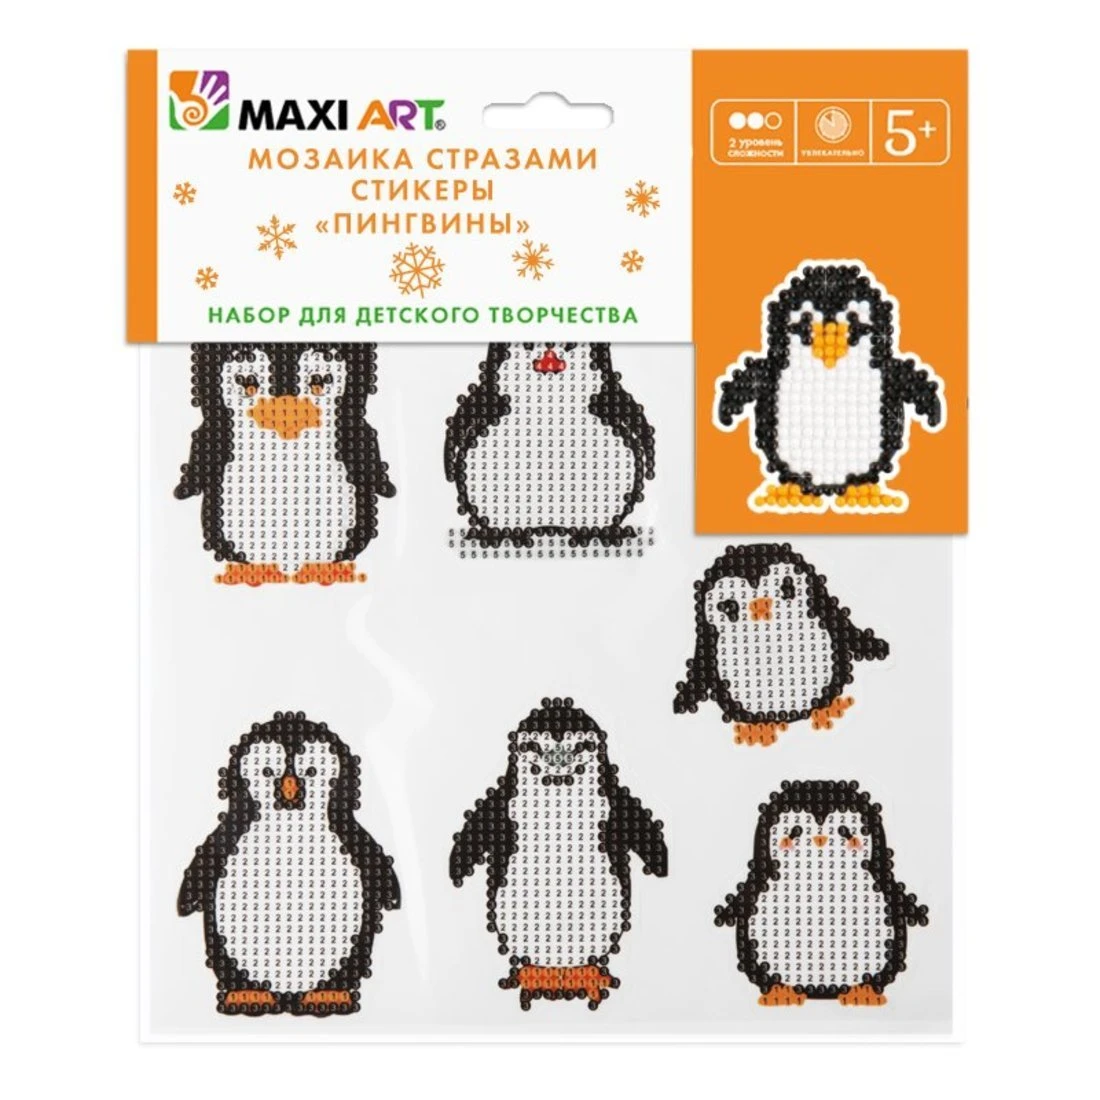 Мозаика стразами Maxi Art набор из 7 стикеров со стразами Пингвины 20х20 см.